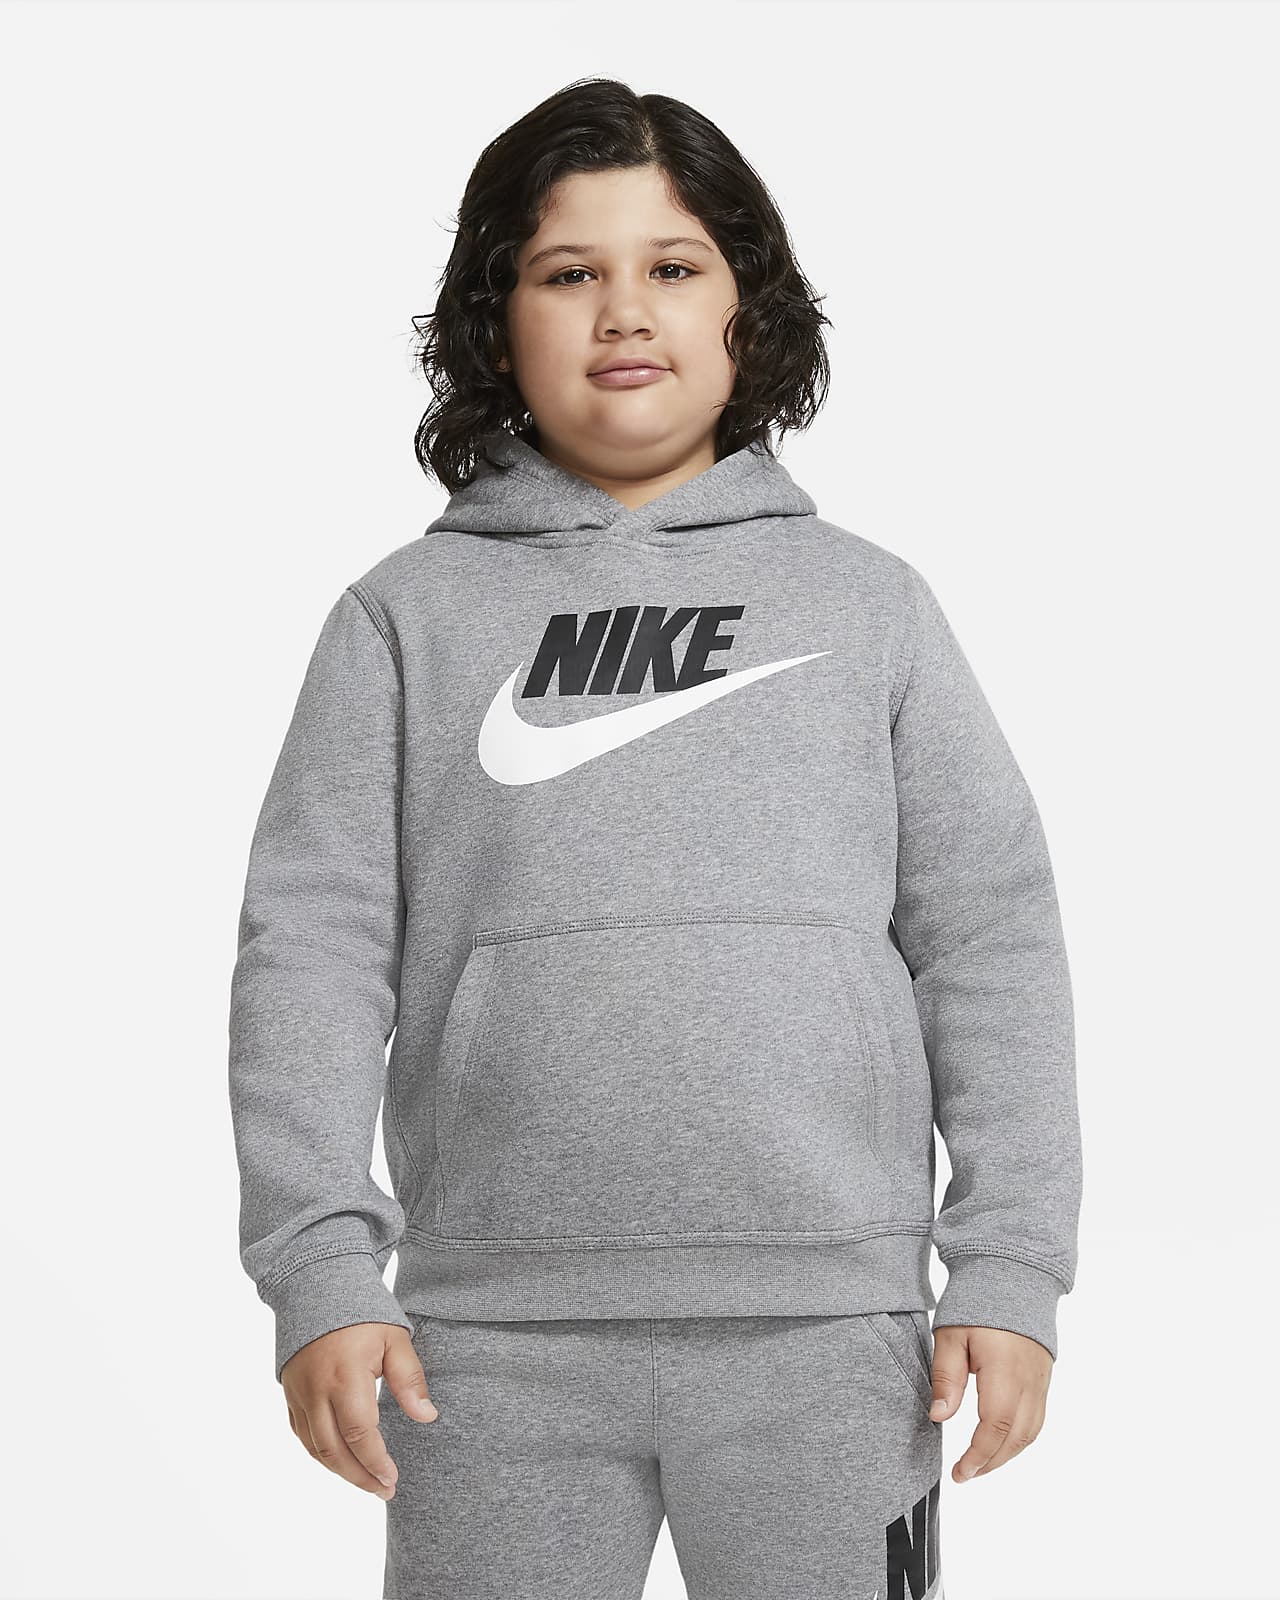 Nike Sportswear Club Fleece Hoodie für ältere Kinder (Jungen) (erweiterte Größe)